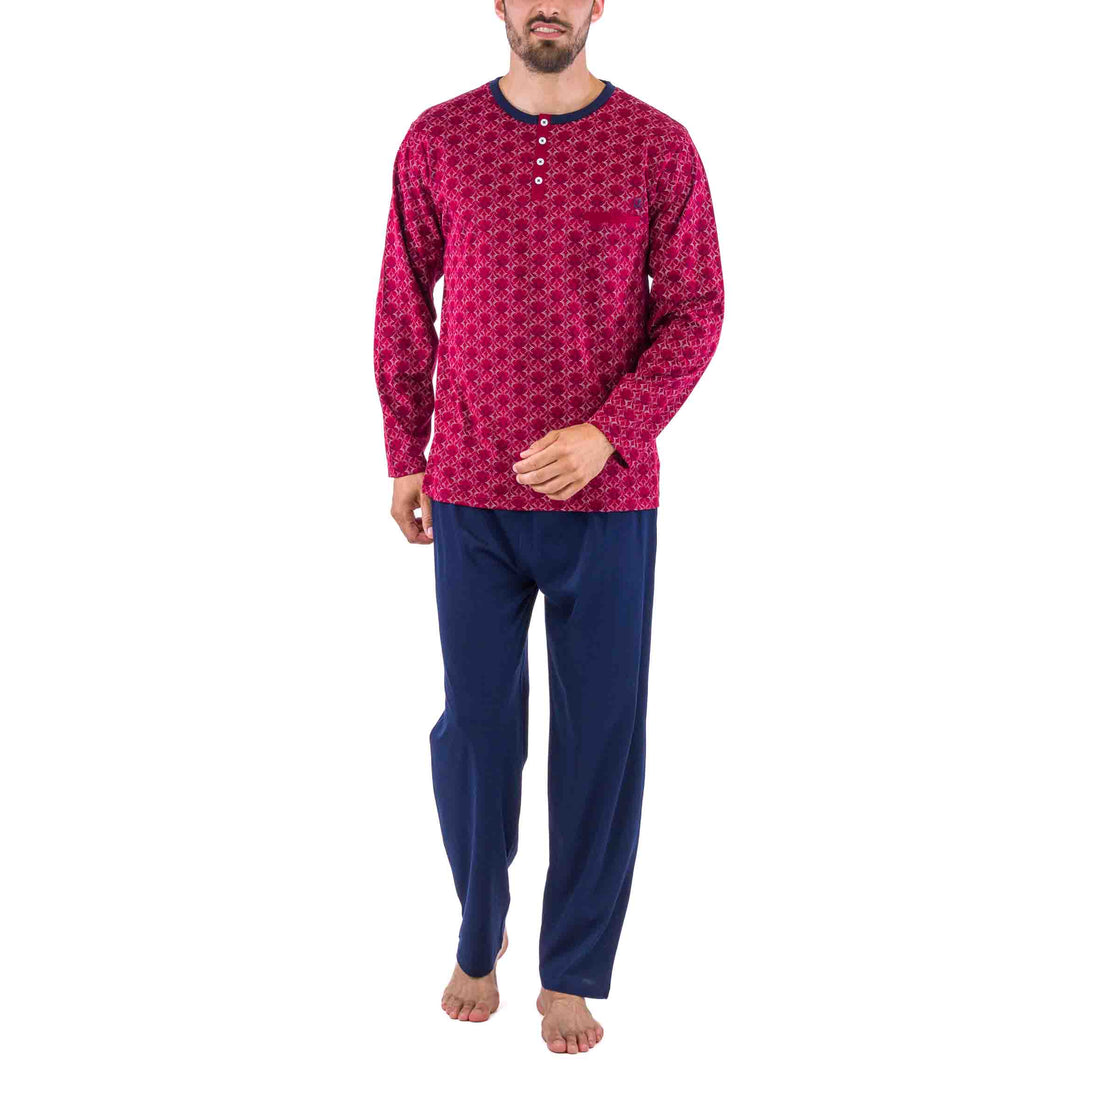 Pyjama Col Boutonné en Jersey de Coton Mercerisé Imprimé Rétro Bordeaux et Marine